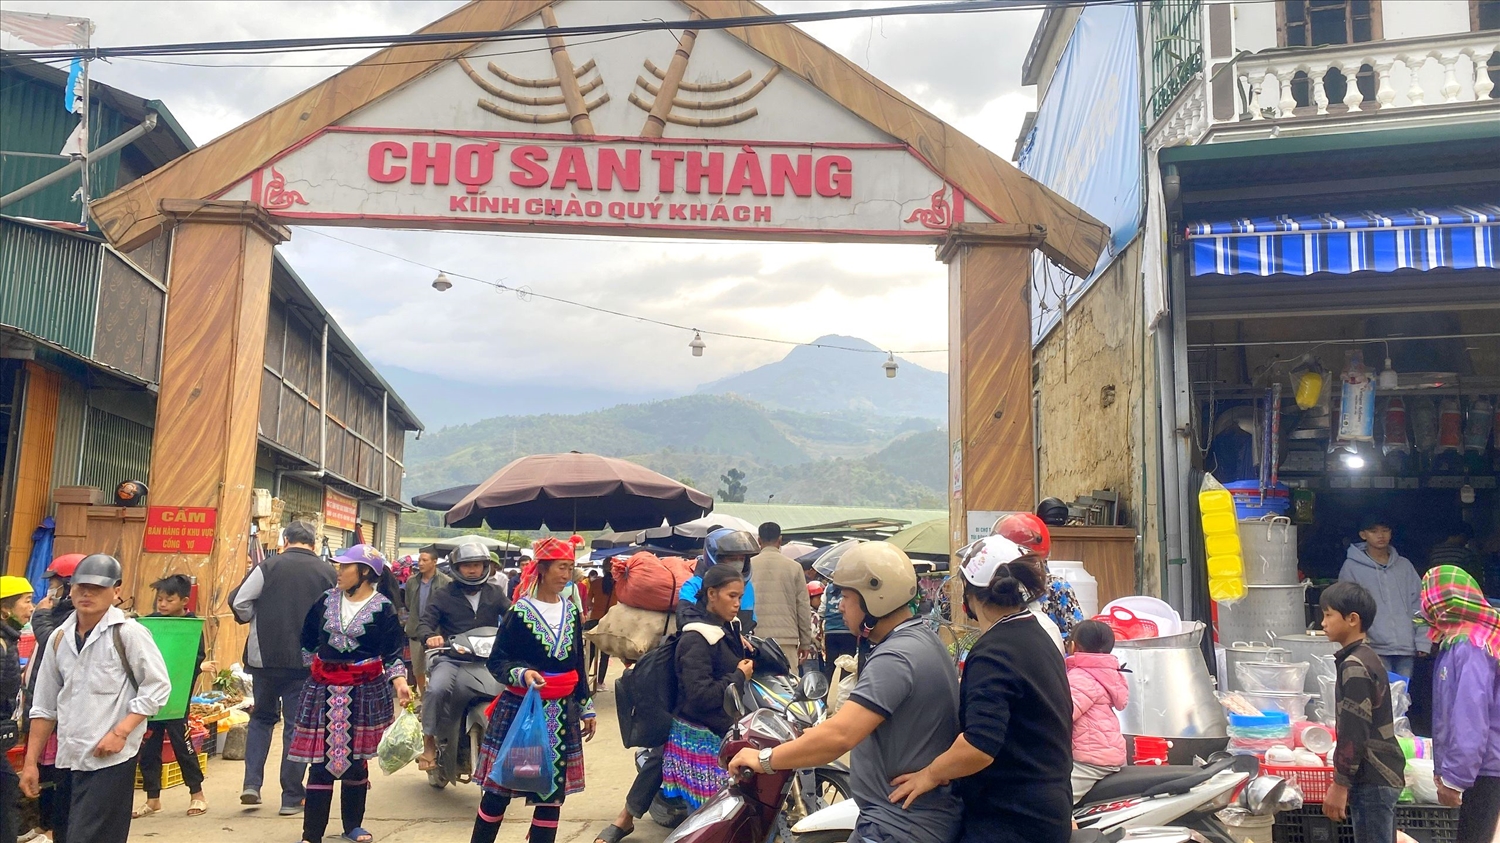 (PHÓNG SỰ ẢNH) Chợ phiên San Thàng - nơi hội tụ sắc màu văn hóa vùng cao Tây Bắc